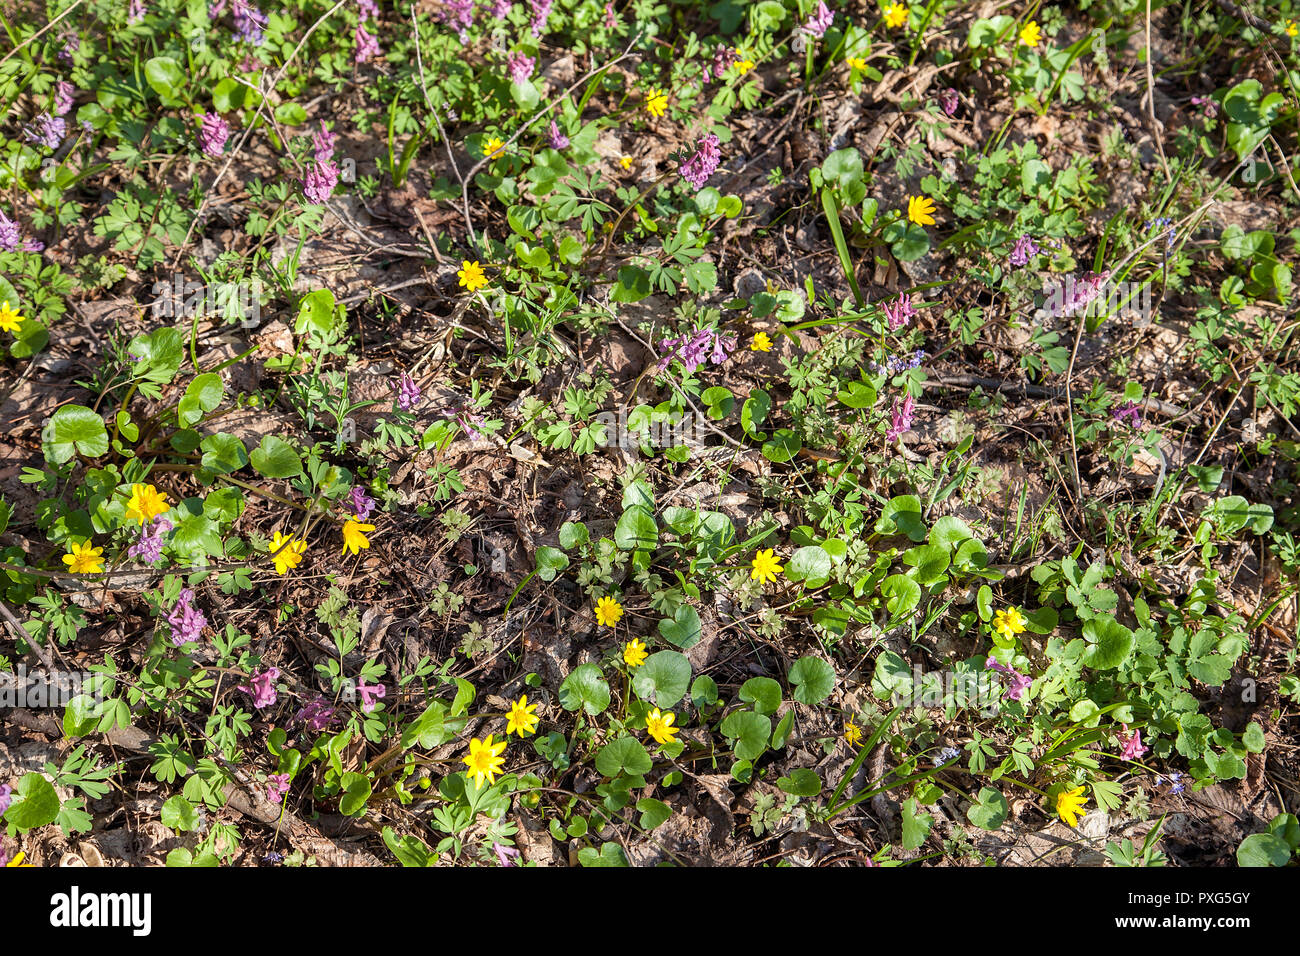 Allgemeine Ansicht blühende Pflanze von Corydalis solida und  Sumpfdotterblume (Caltha palustris) blühen im Frühjahr Wald. Klein, gelb  und lila Blumen Stockfotografie - Alamy